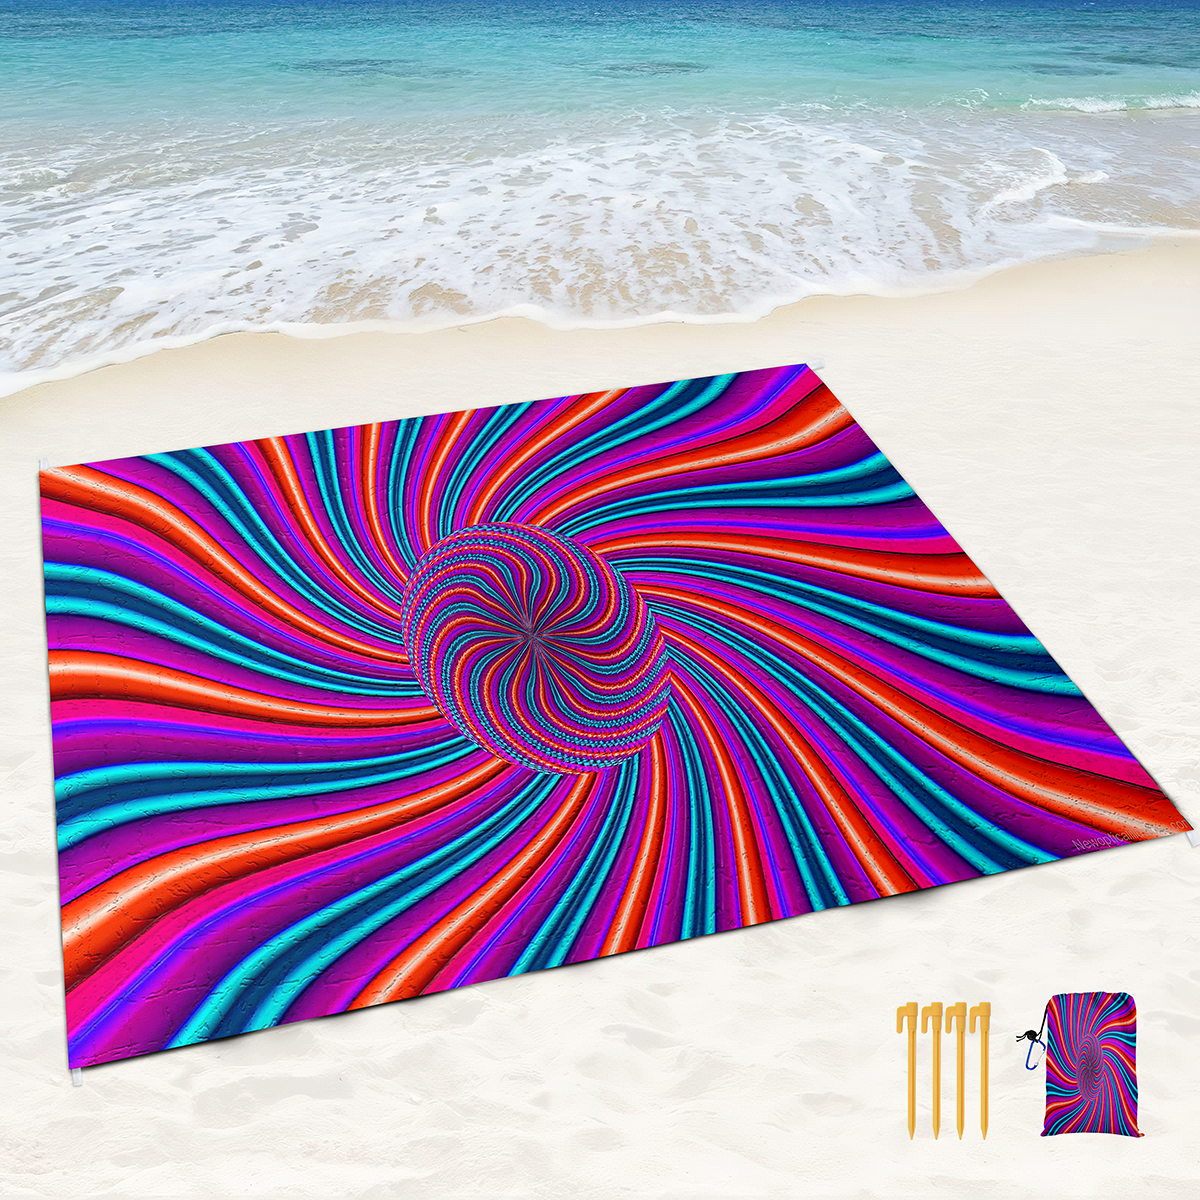 Психоделический красочный пляжный одеял с песком.